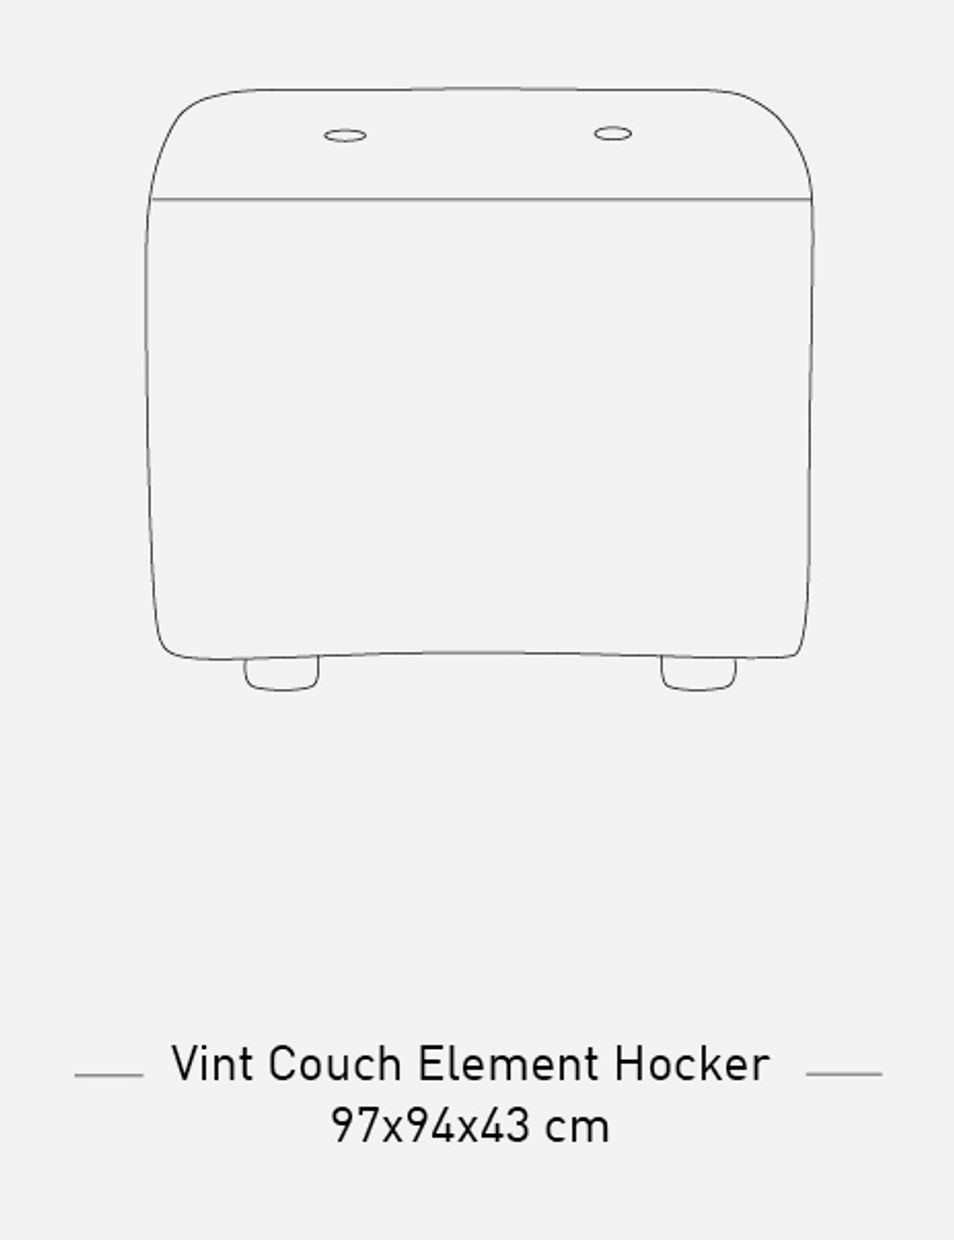 Vint couch: element hocker small, corduroy velvet, aged gold